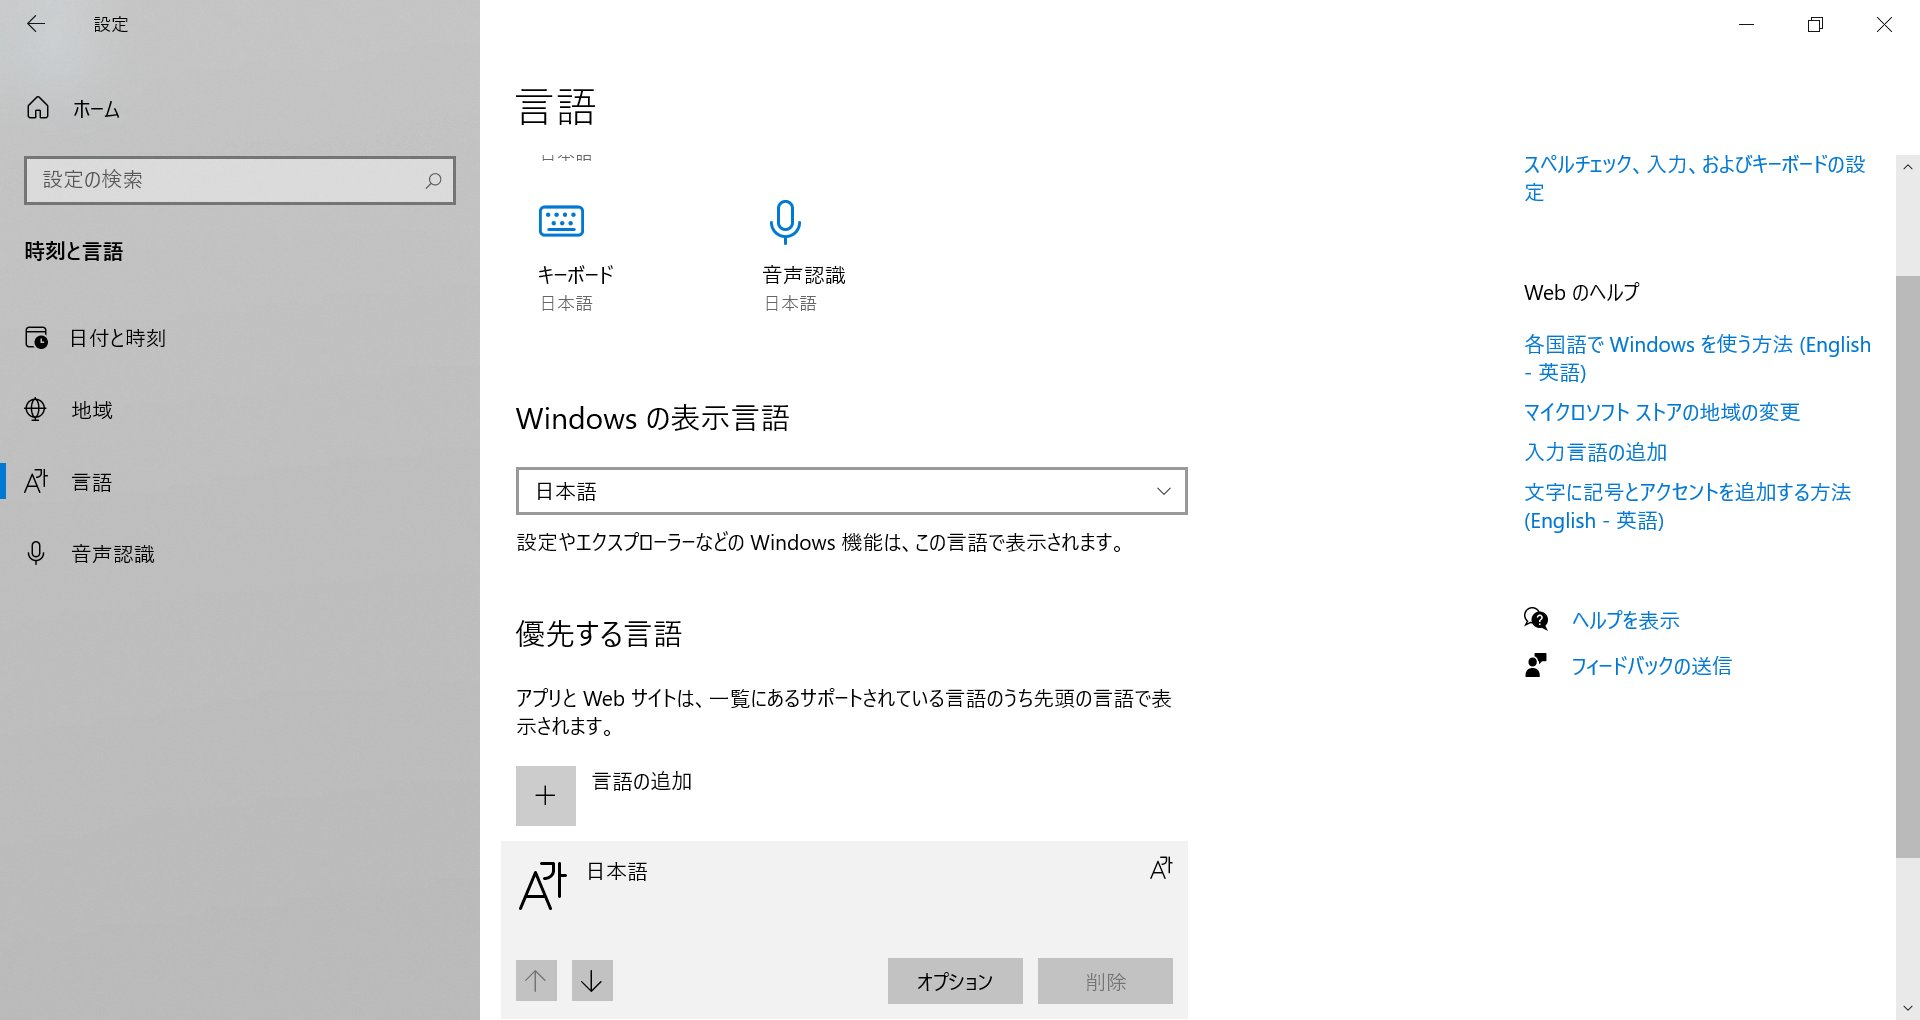 윈도우즈 표준 언어 아이콘이 한자대신 한글로 대체